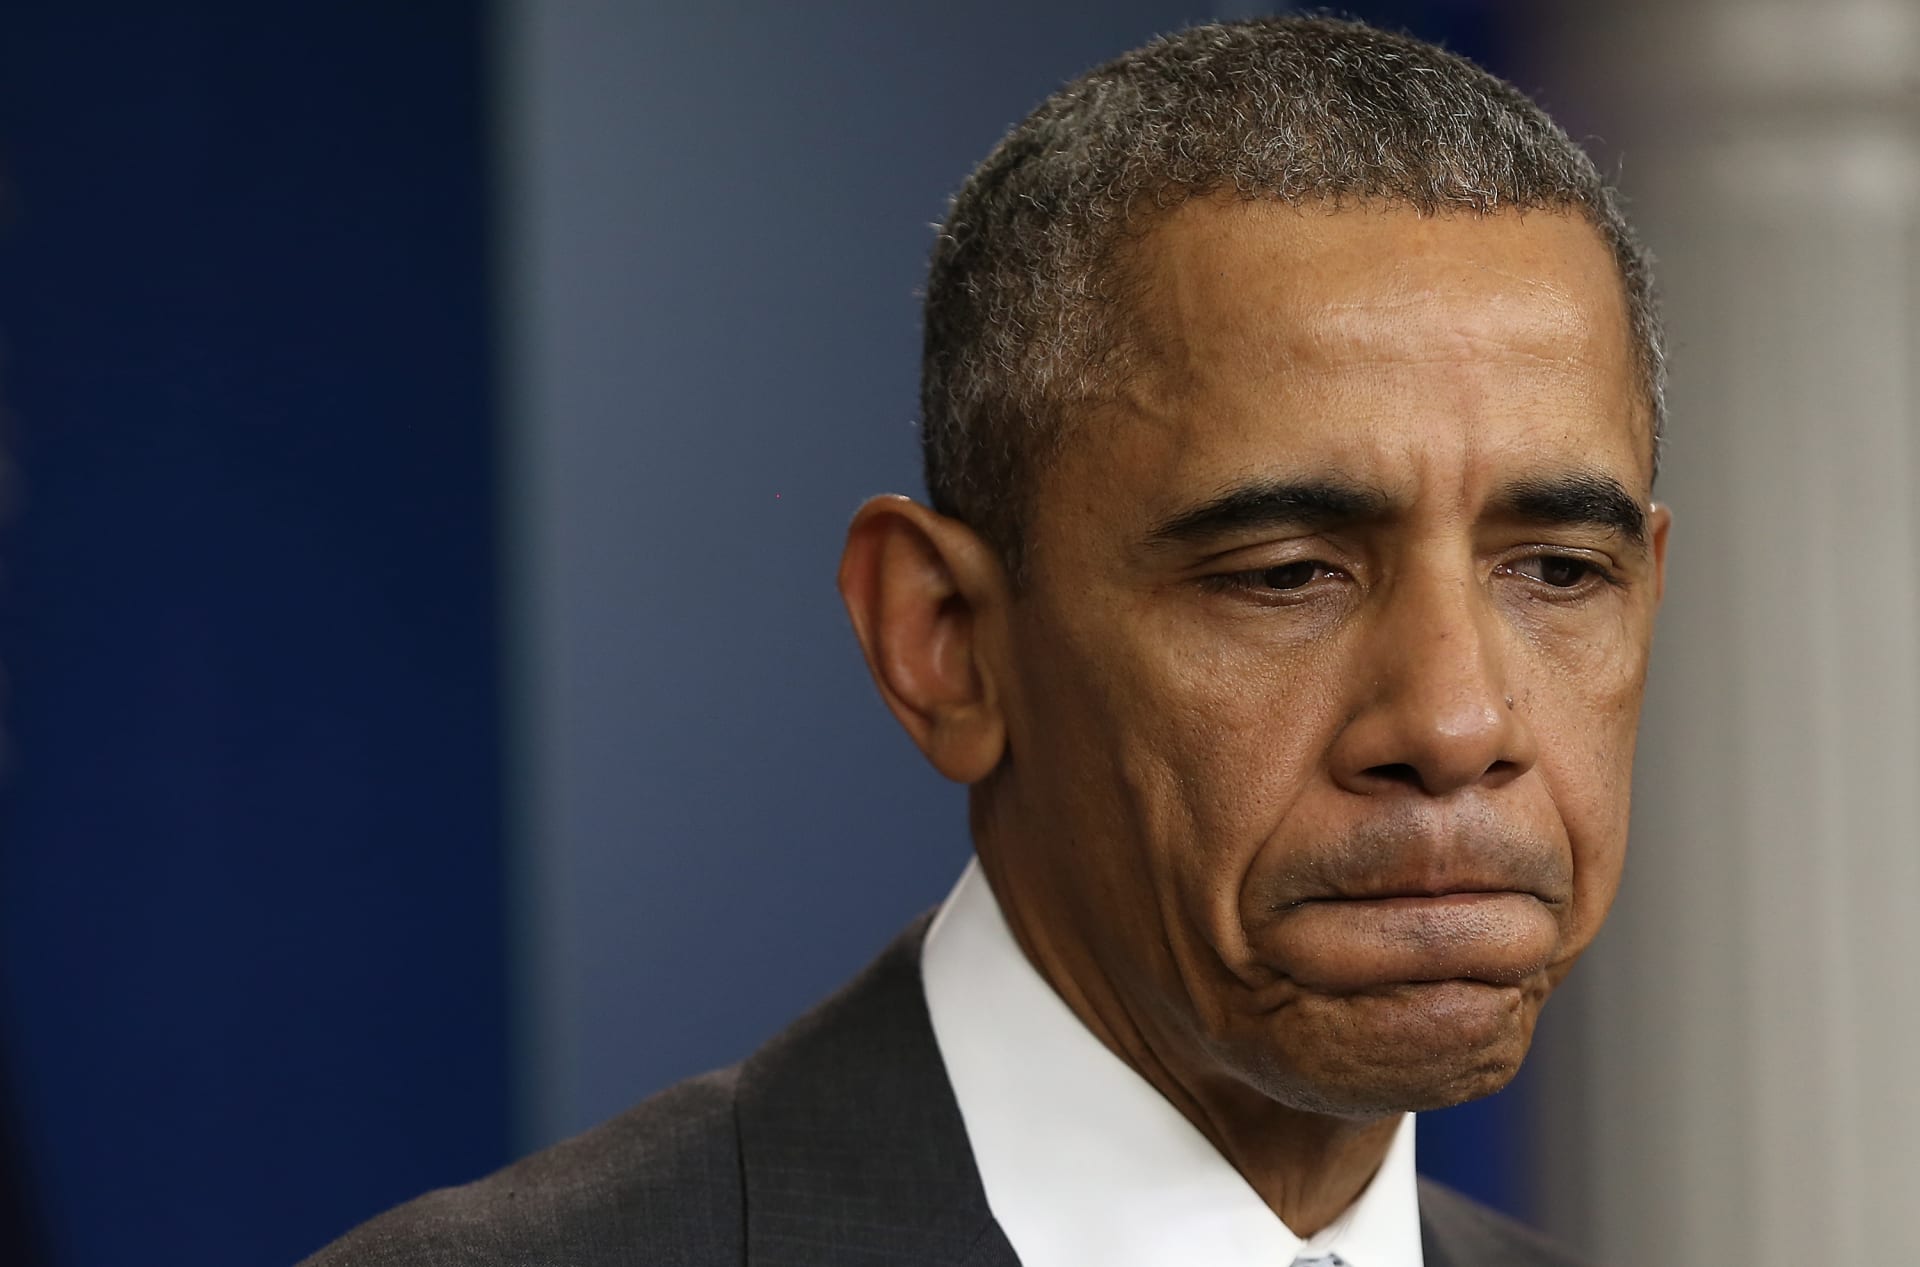 لماذا أعلن أوباما عن "احتواء داعش" قبل يوم من هجمات باريس؟